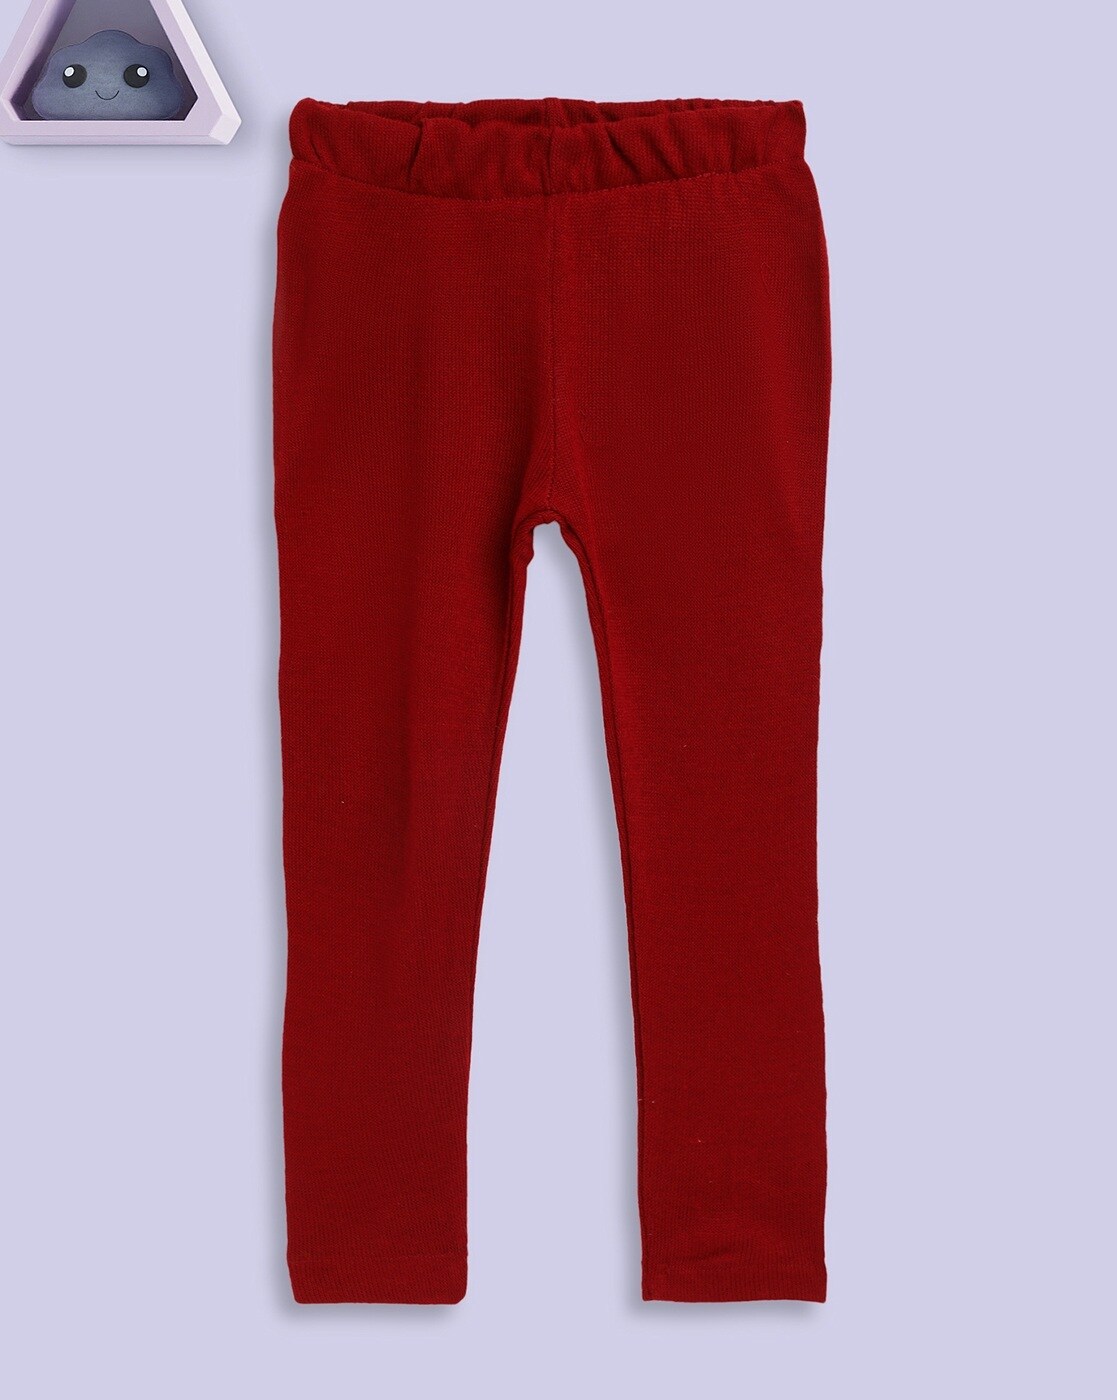 Buy Red Leggings for Girls by KIDDERZ Online